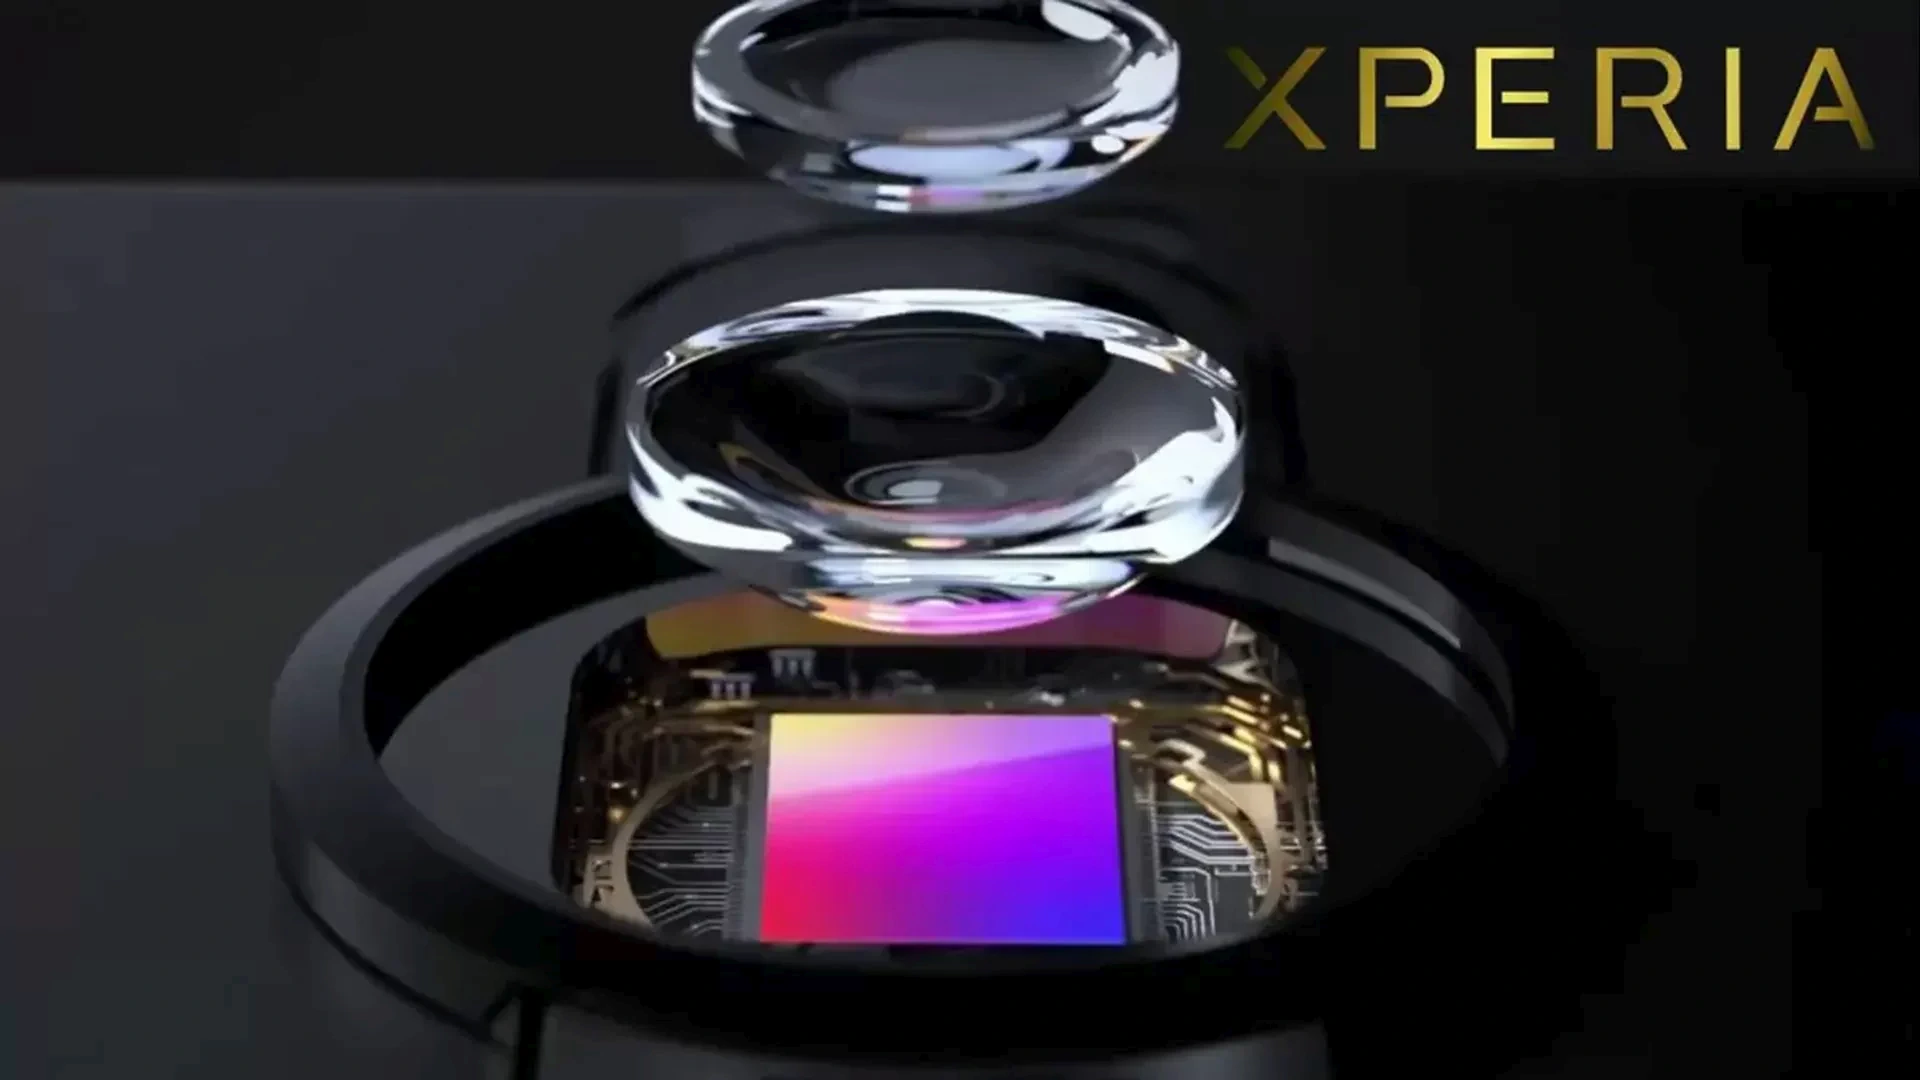 Sony prepara un smartphone con una cámara increíble